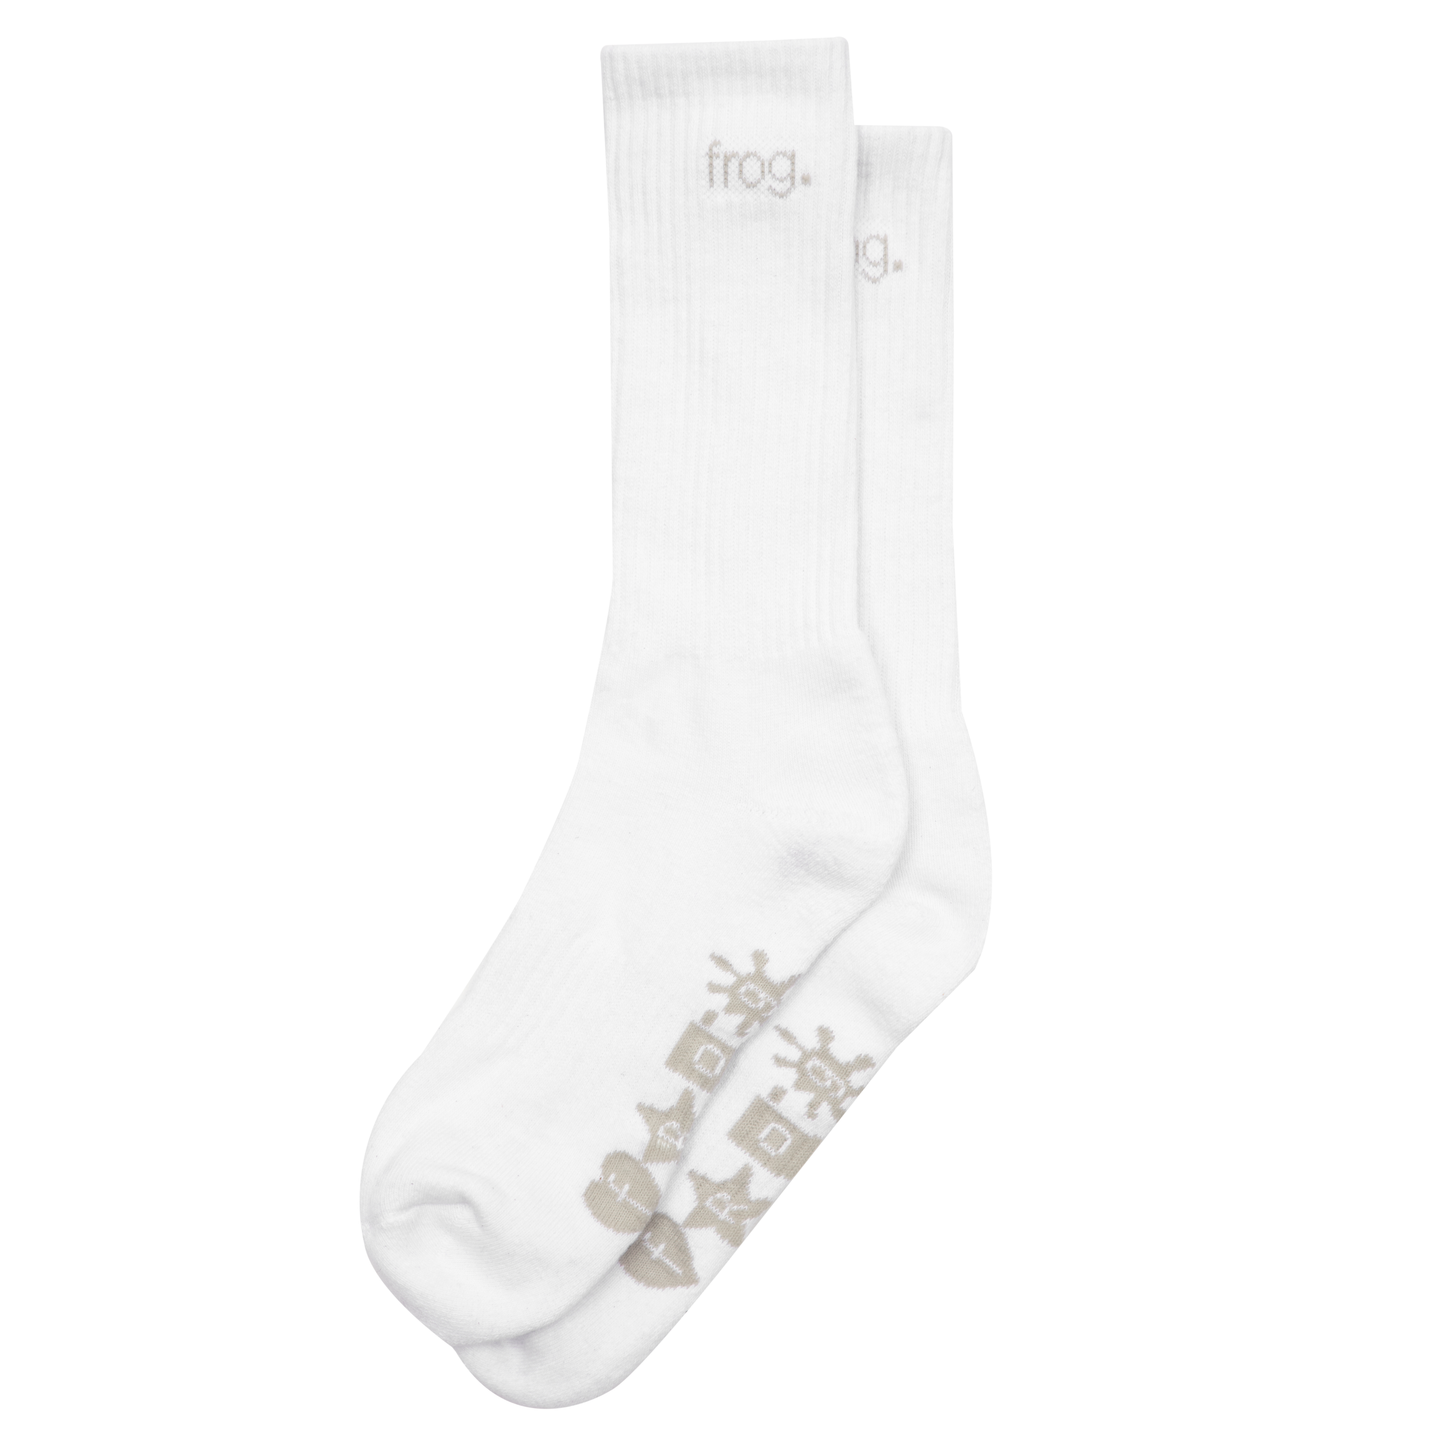 Frog Socks, White